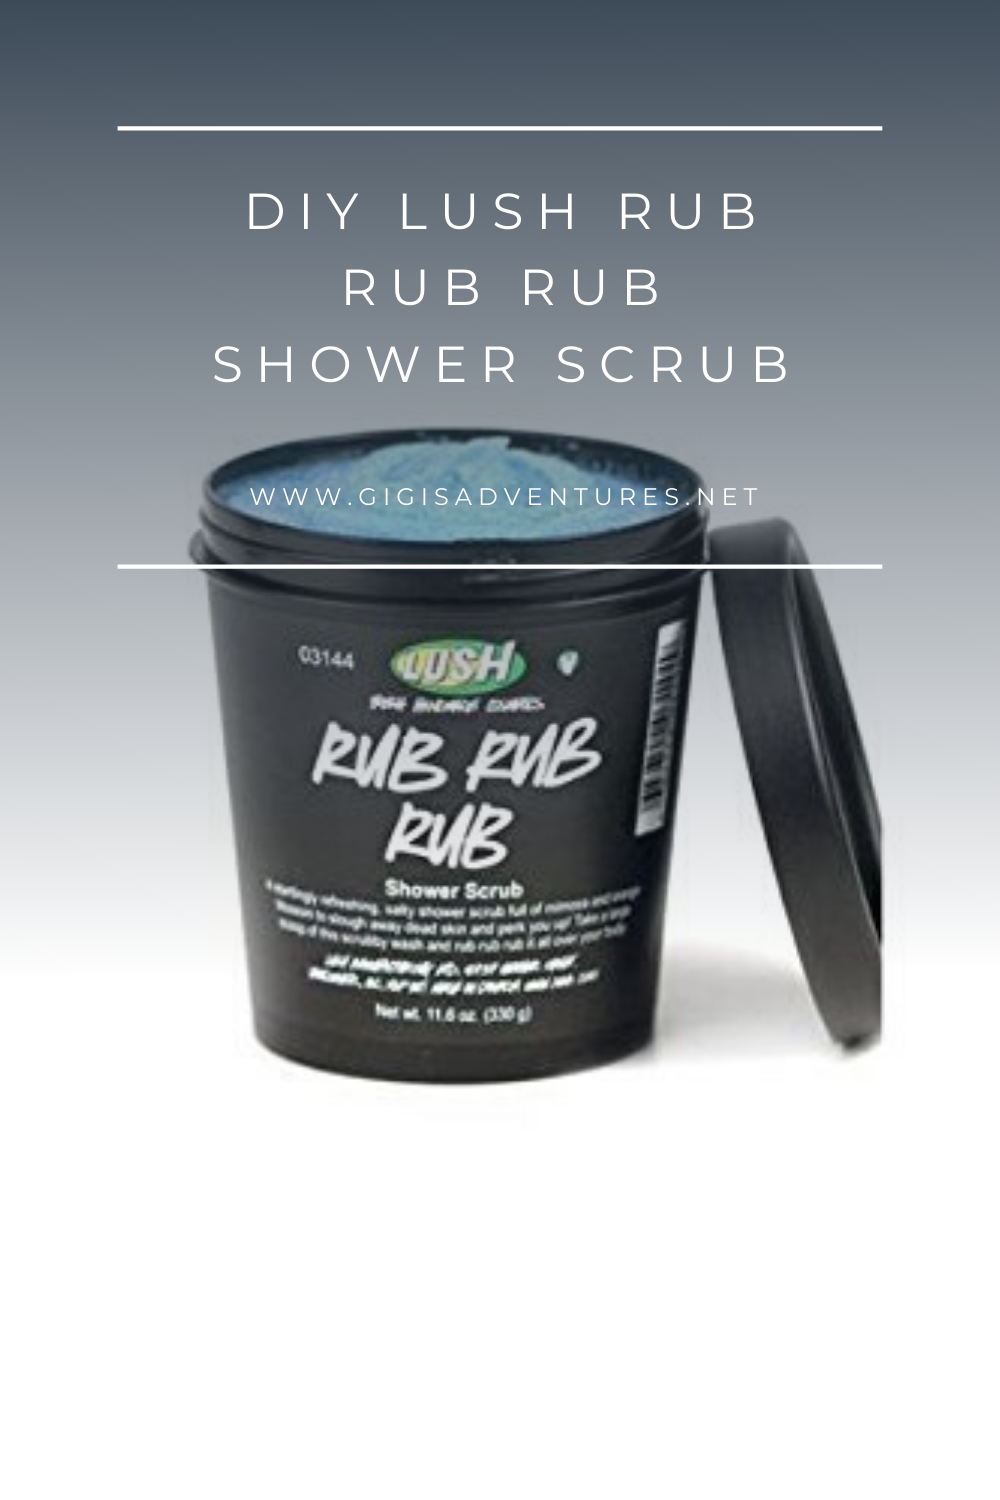 DIY Lush Rub Rub Rub Shower Scrub - Lush Rub Rub Rub Copycat